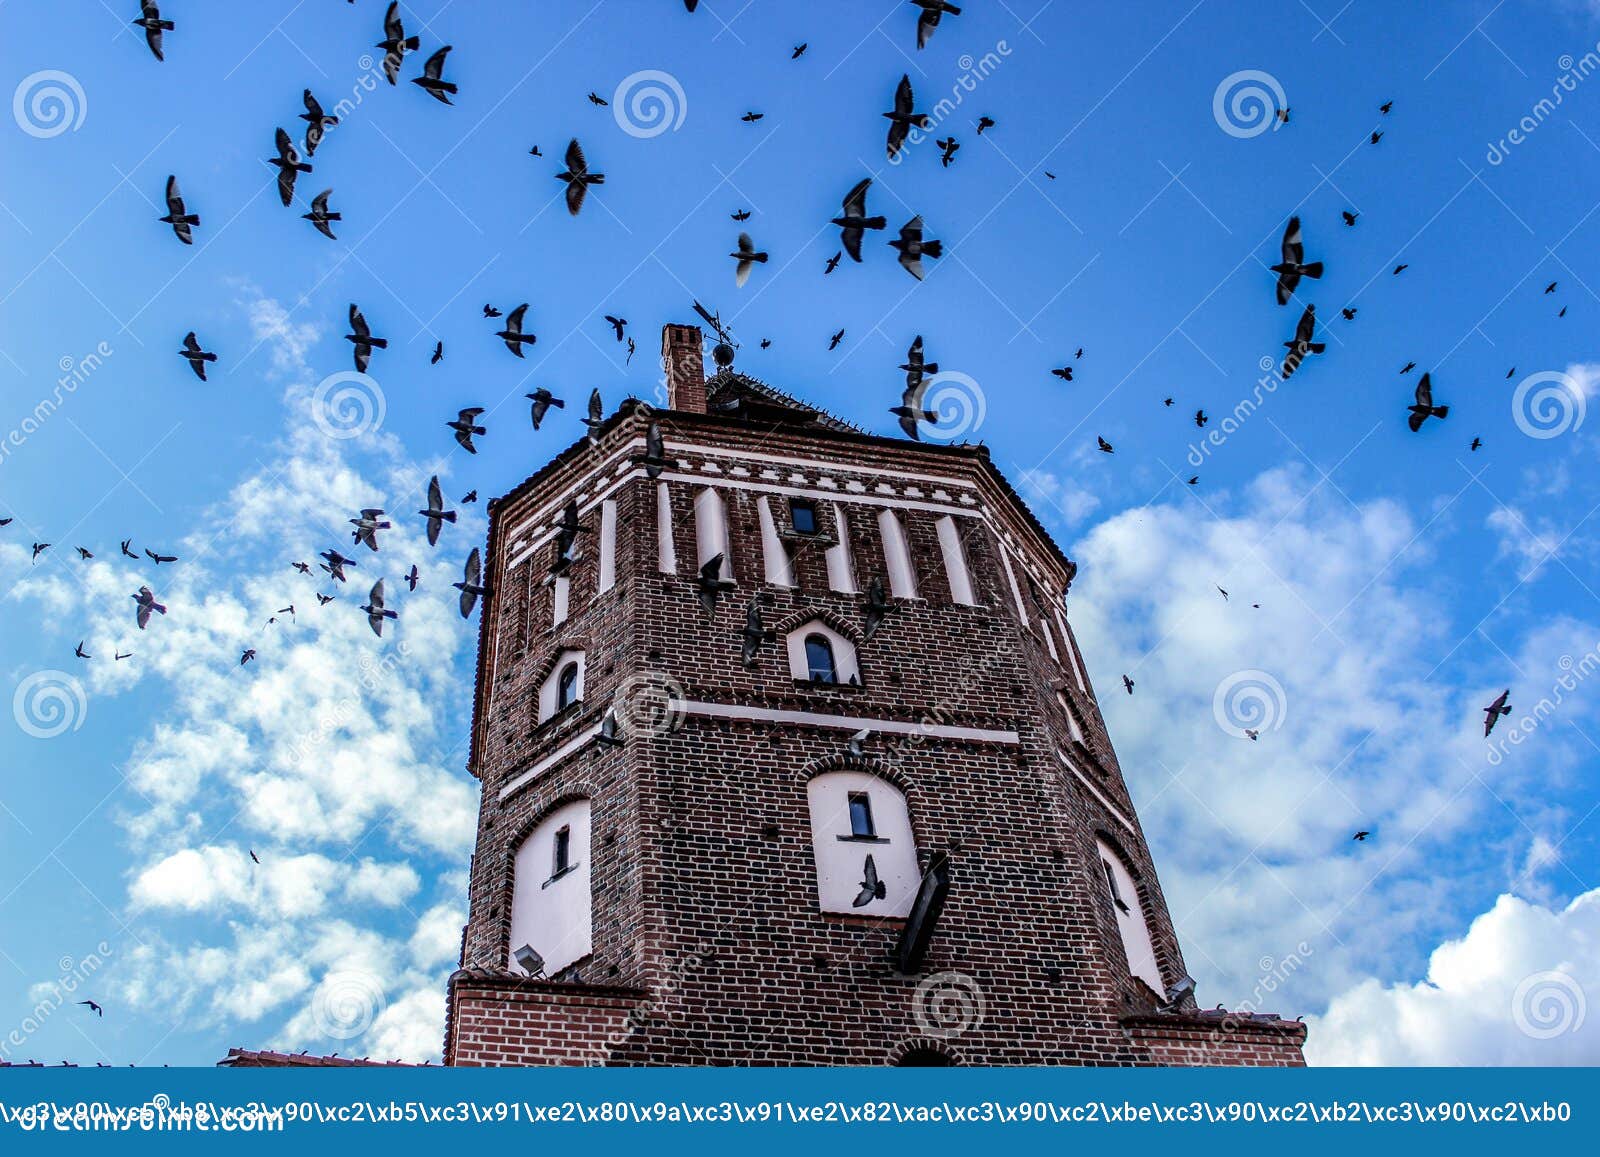 Birds башня. Башня для птиц. Птица ТОВЕР. Мальчик и птица башня. Башня из птичек.